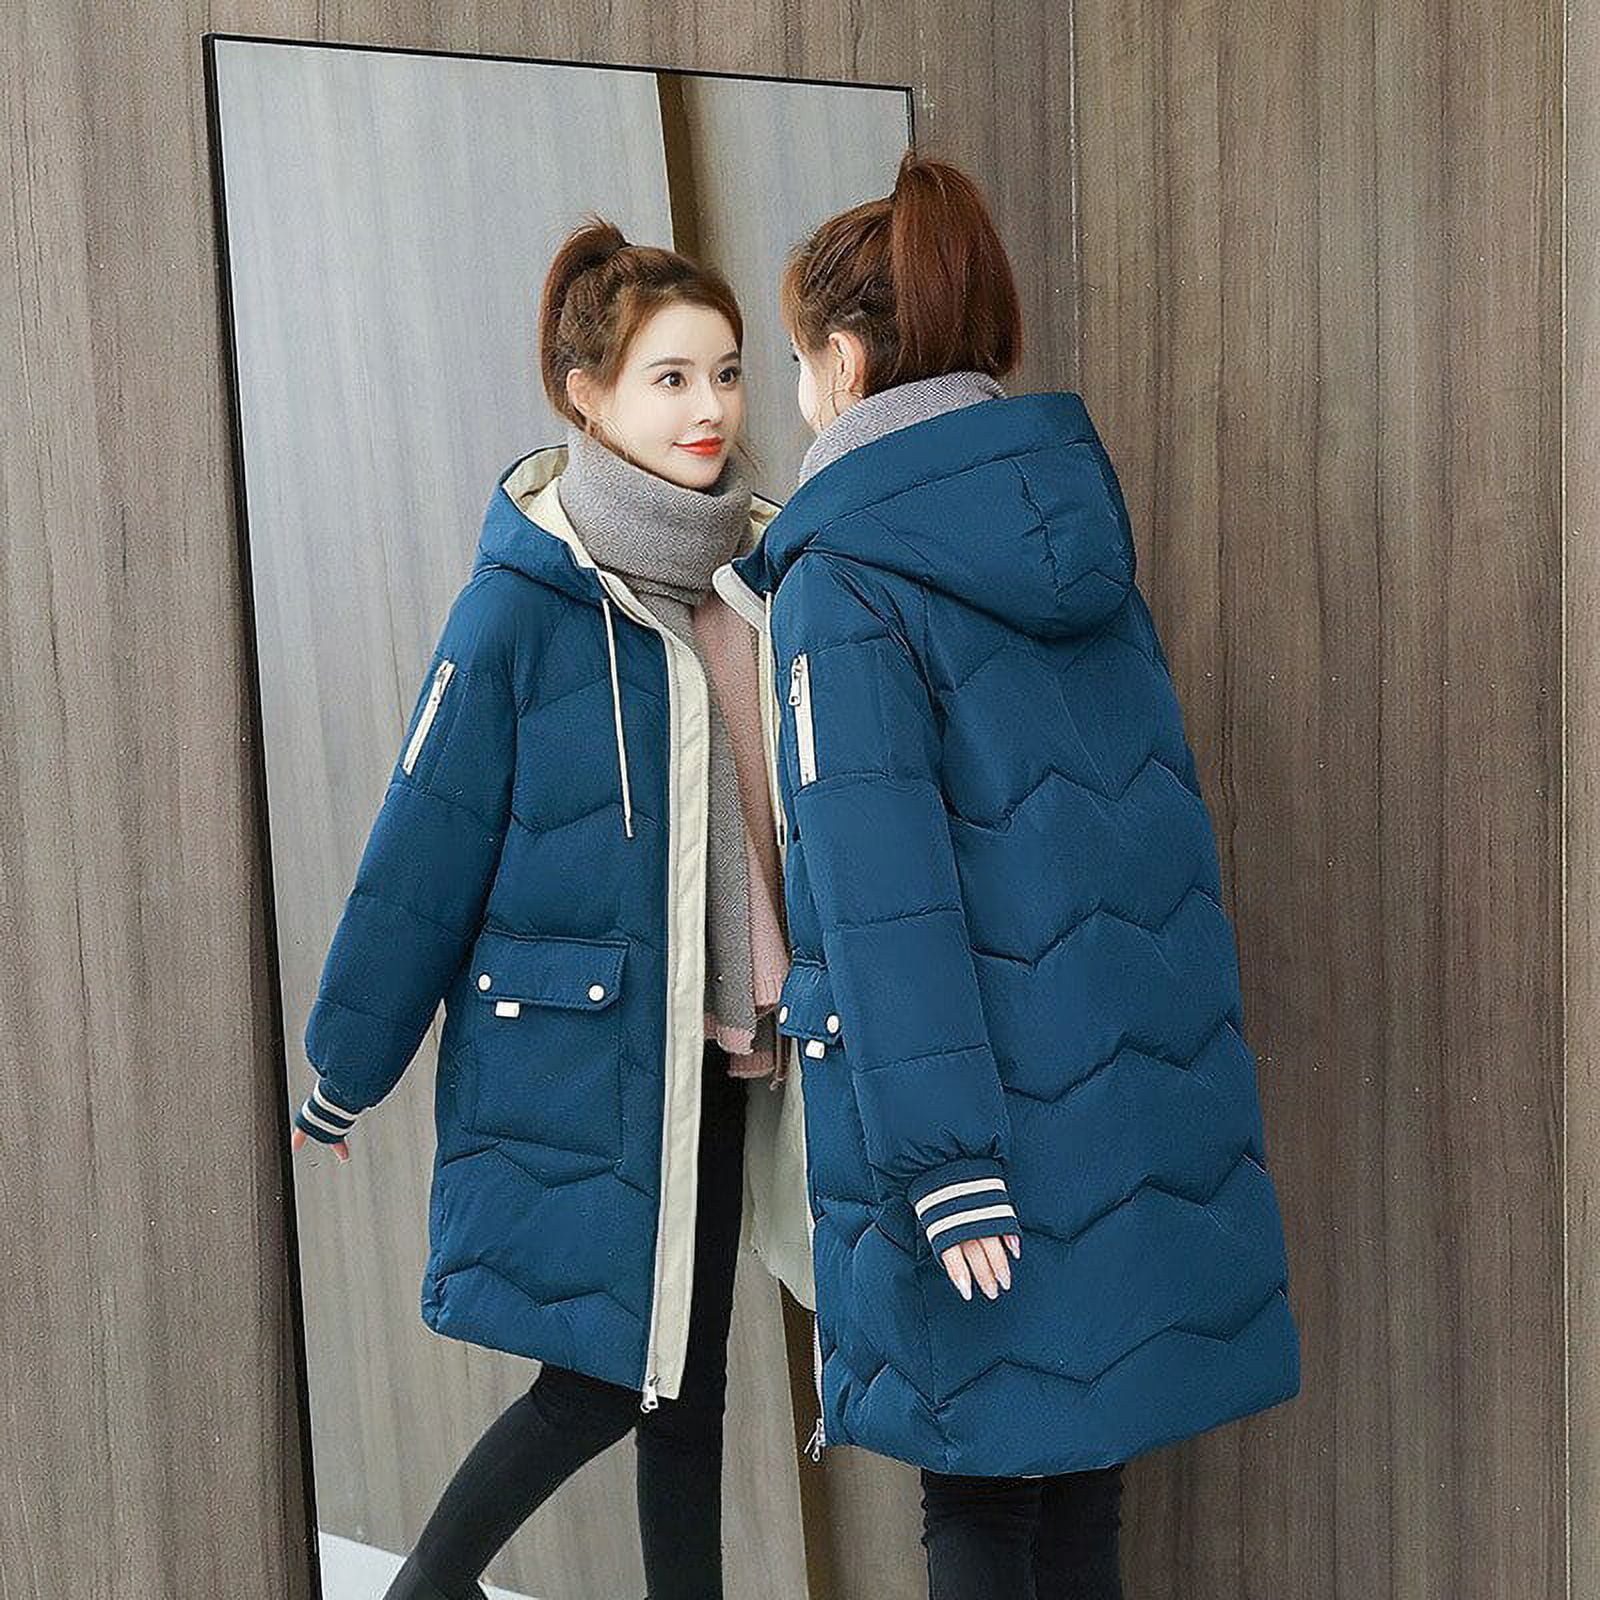 chanel jacket winter women